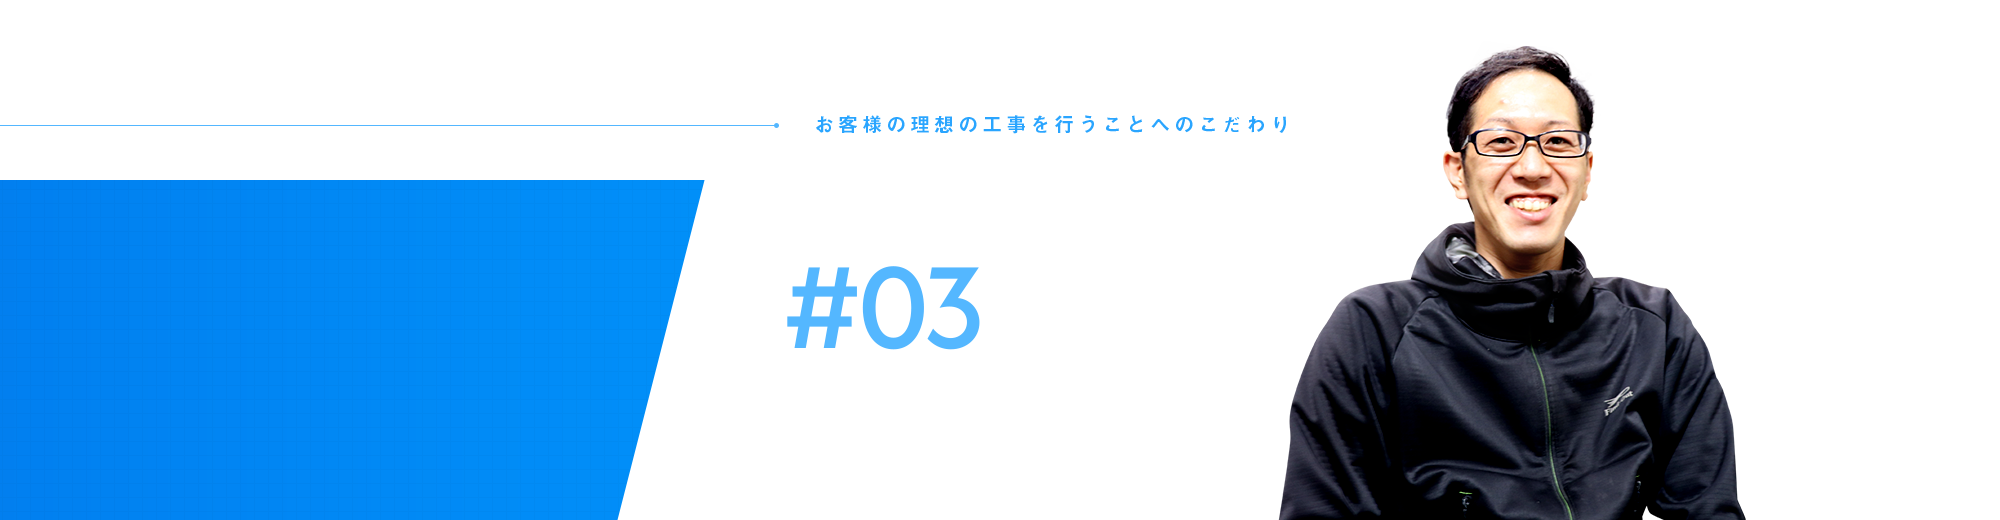 従業員インタビュー#03